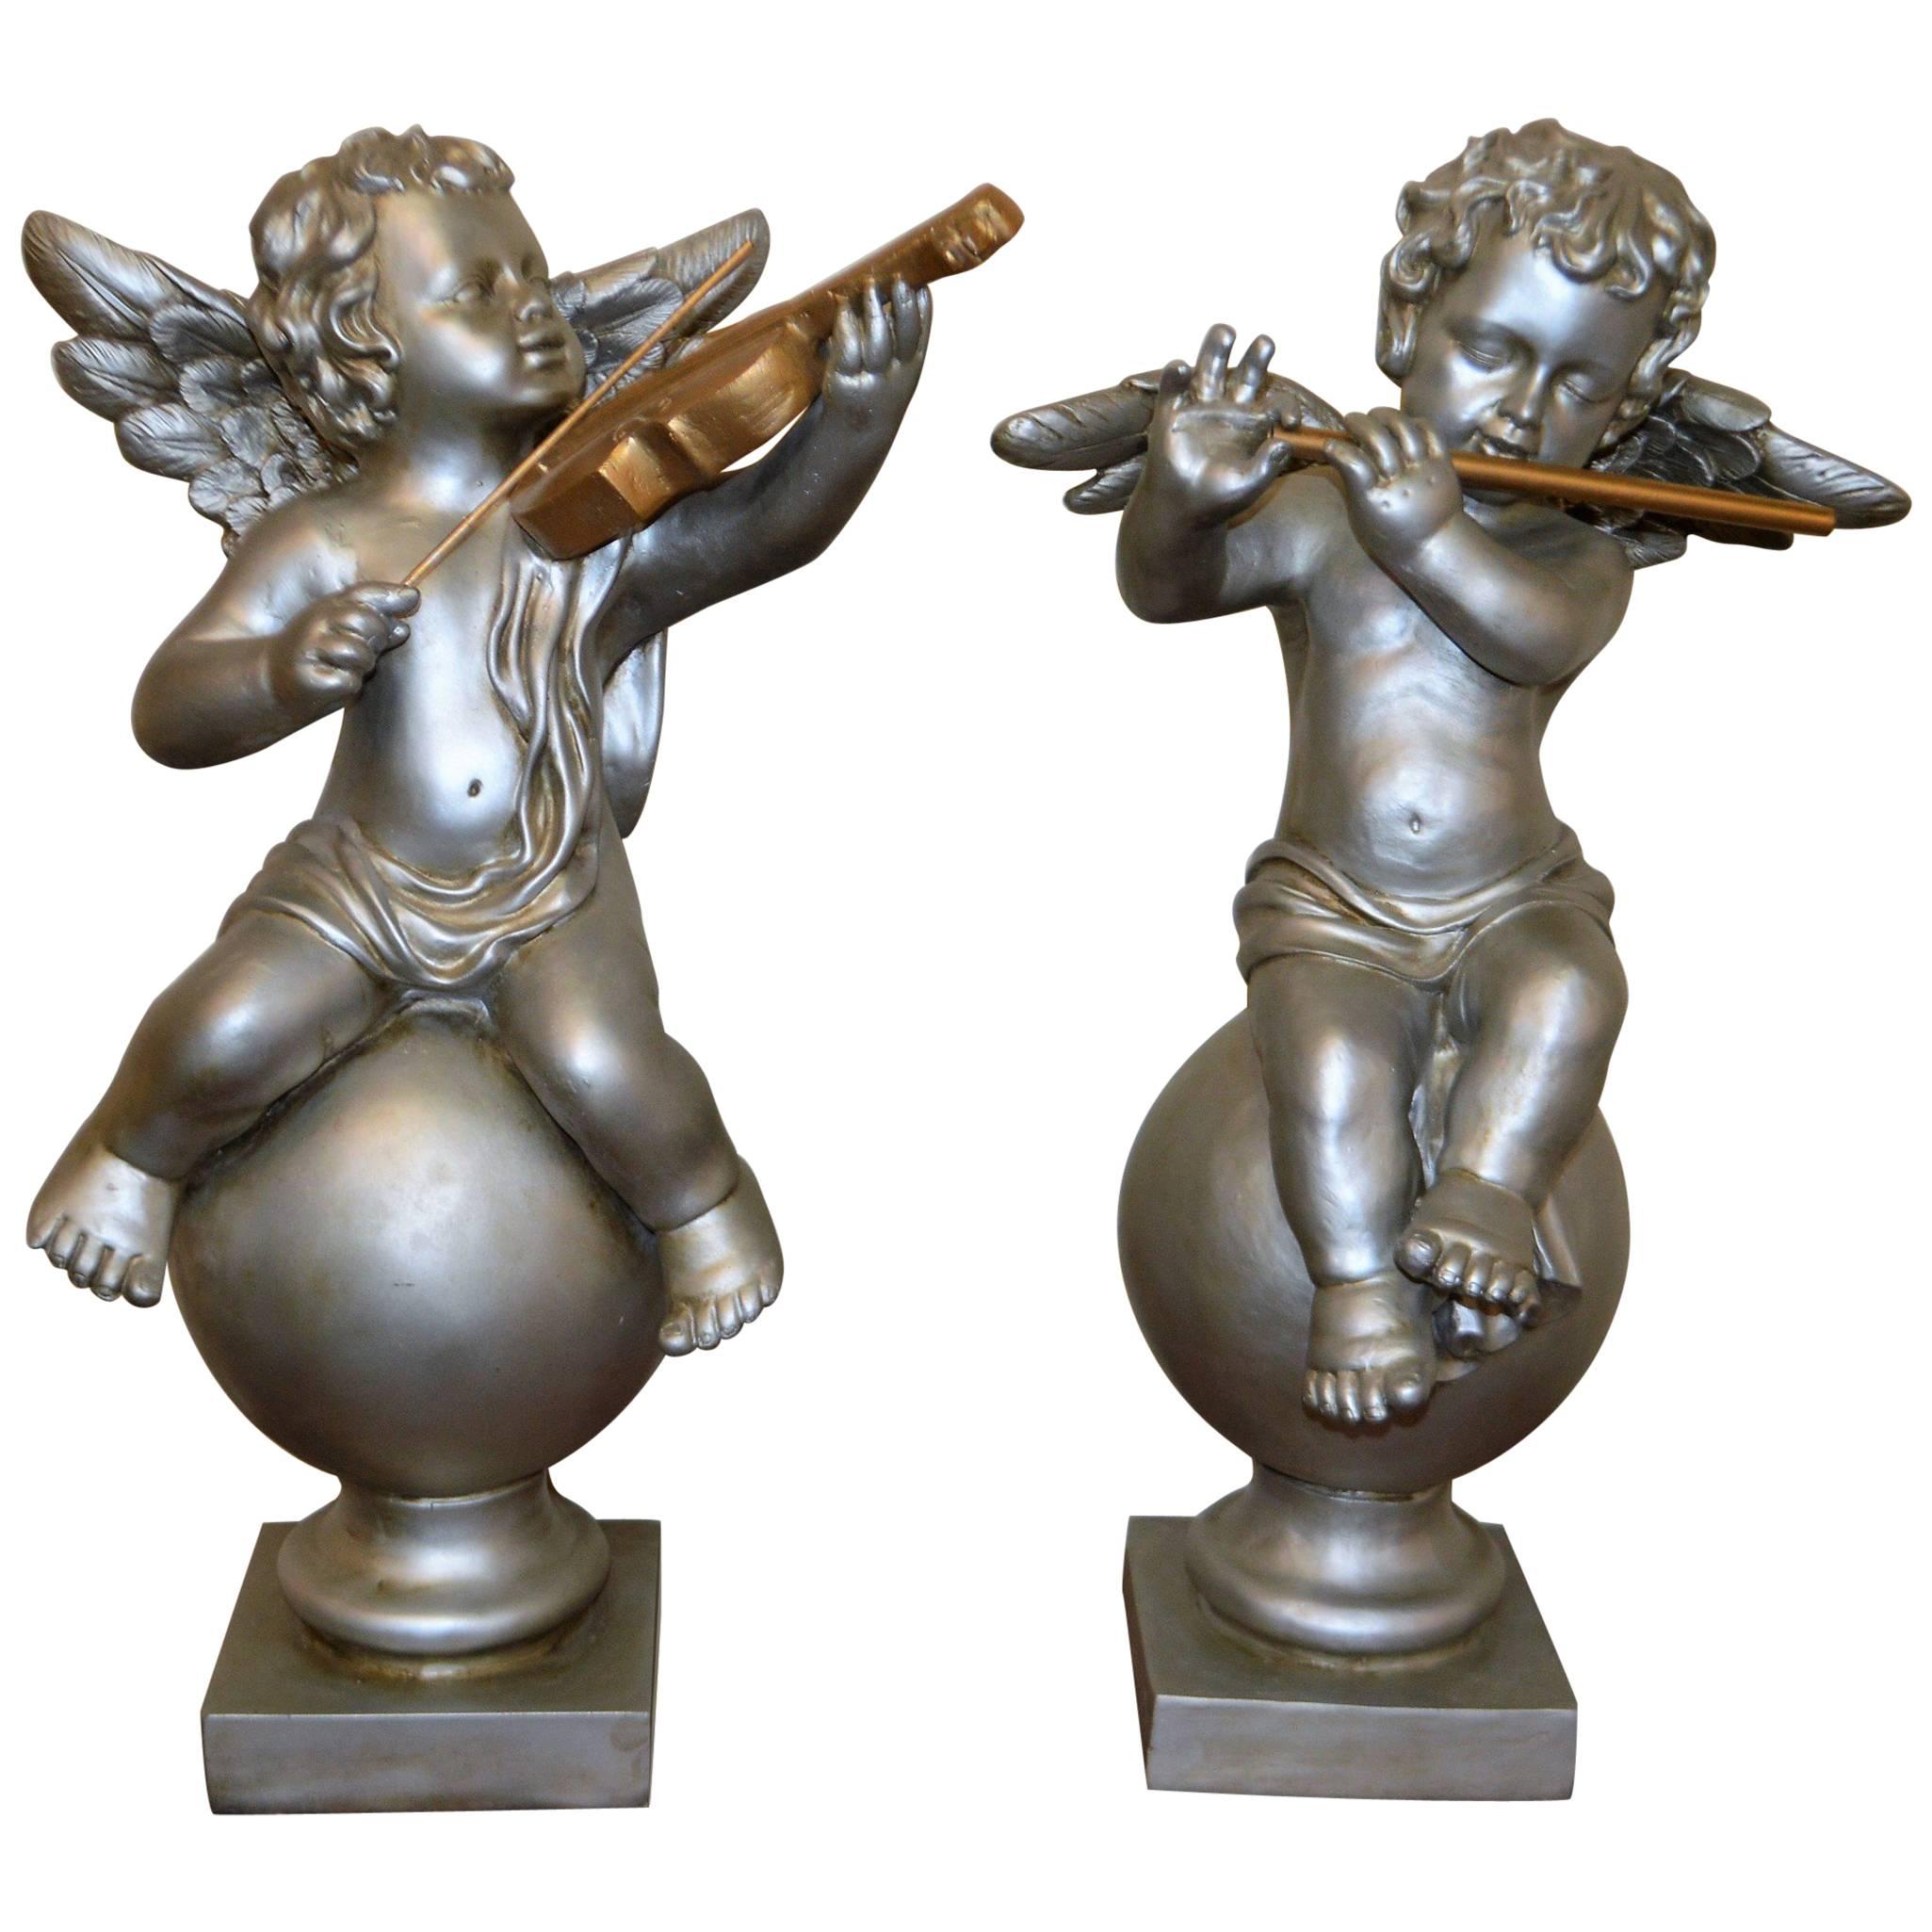 Pair of Silver Ornamental Musician Cherub Sculptures